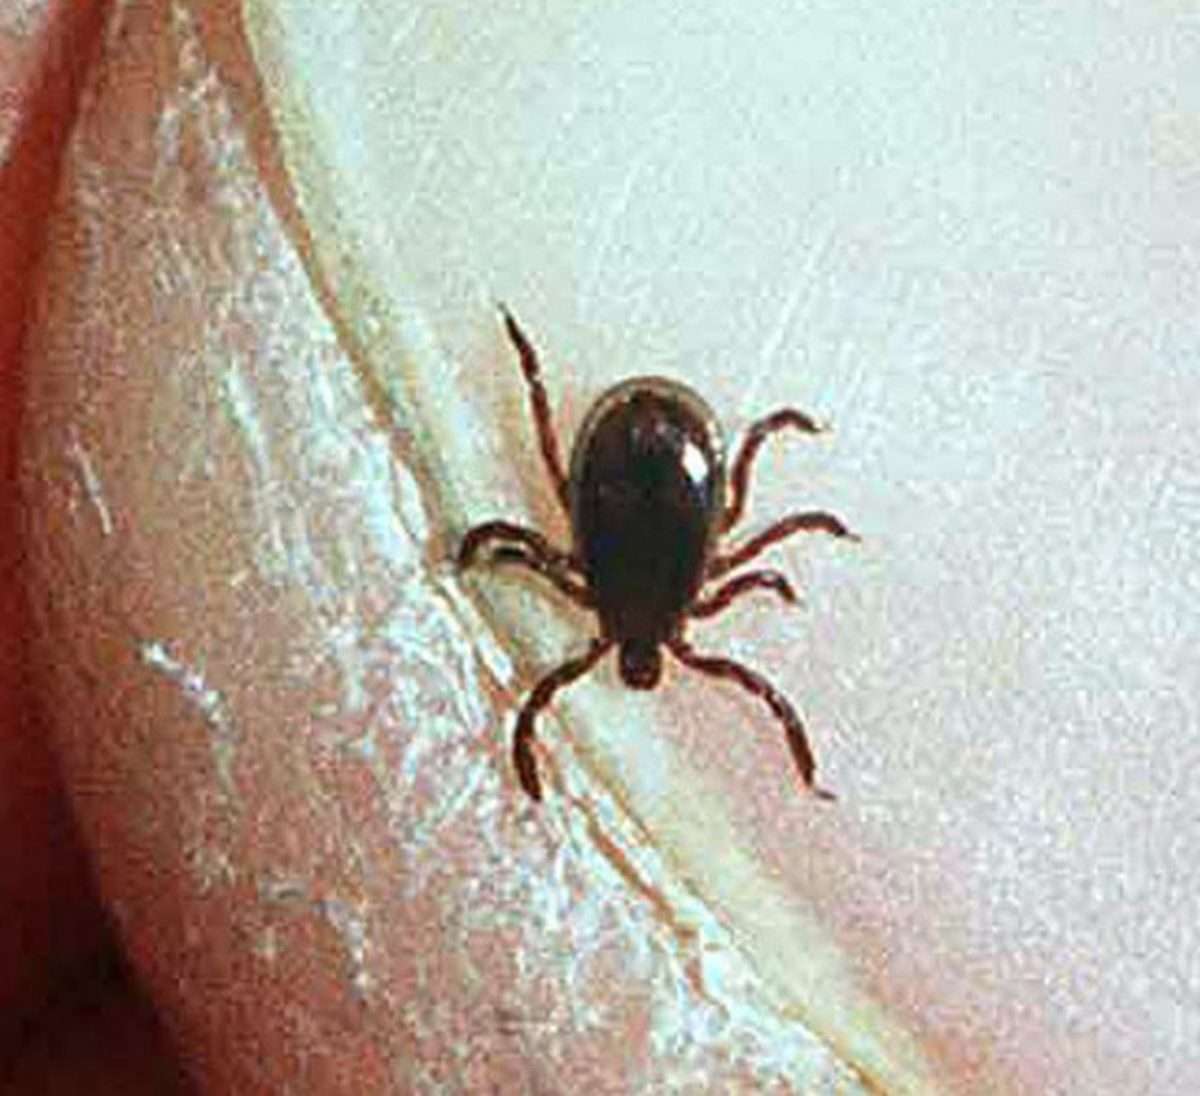 Afraid of ticks, Lyme disease in Upstate NY? We